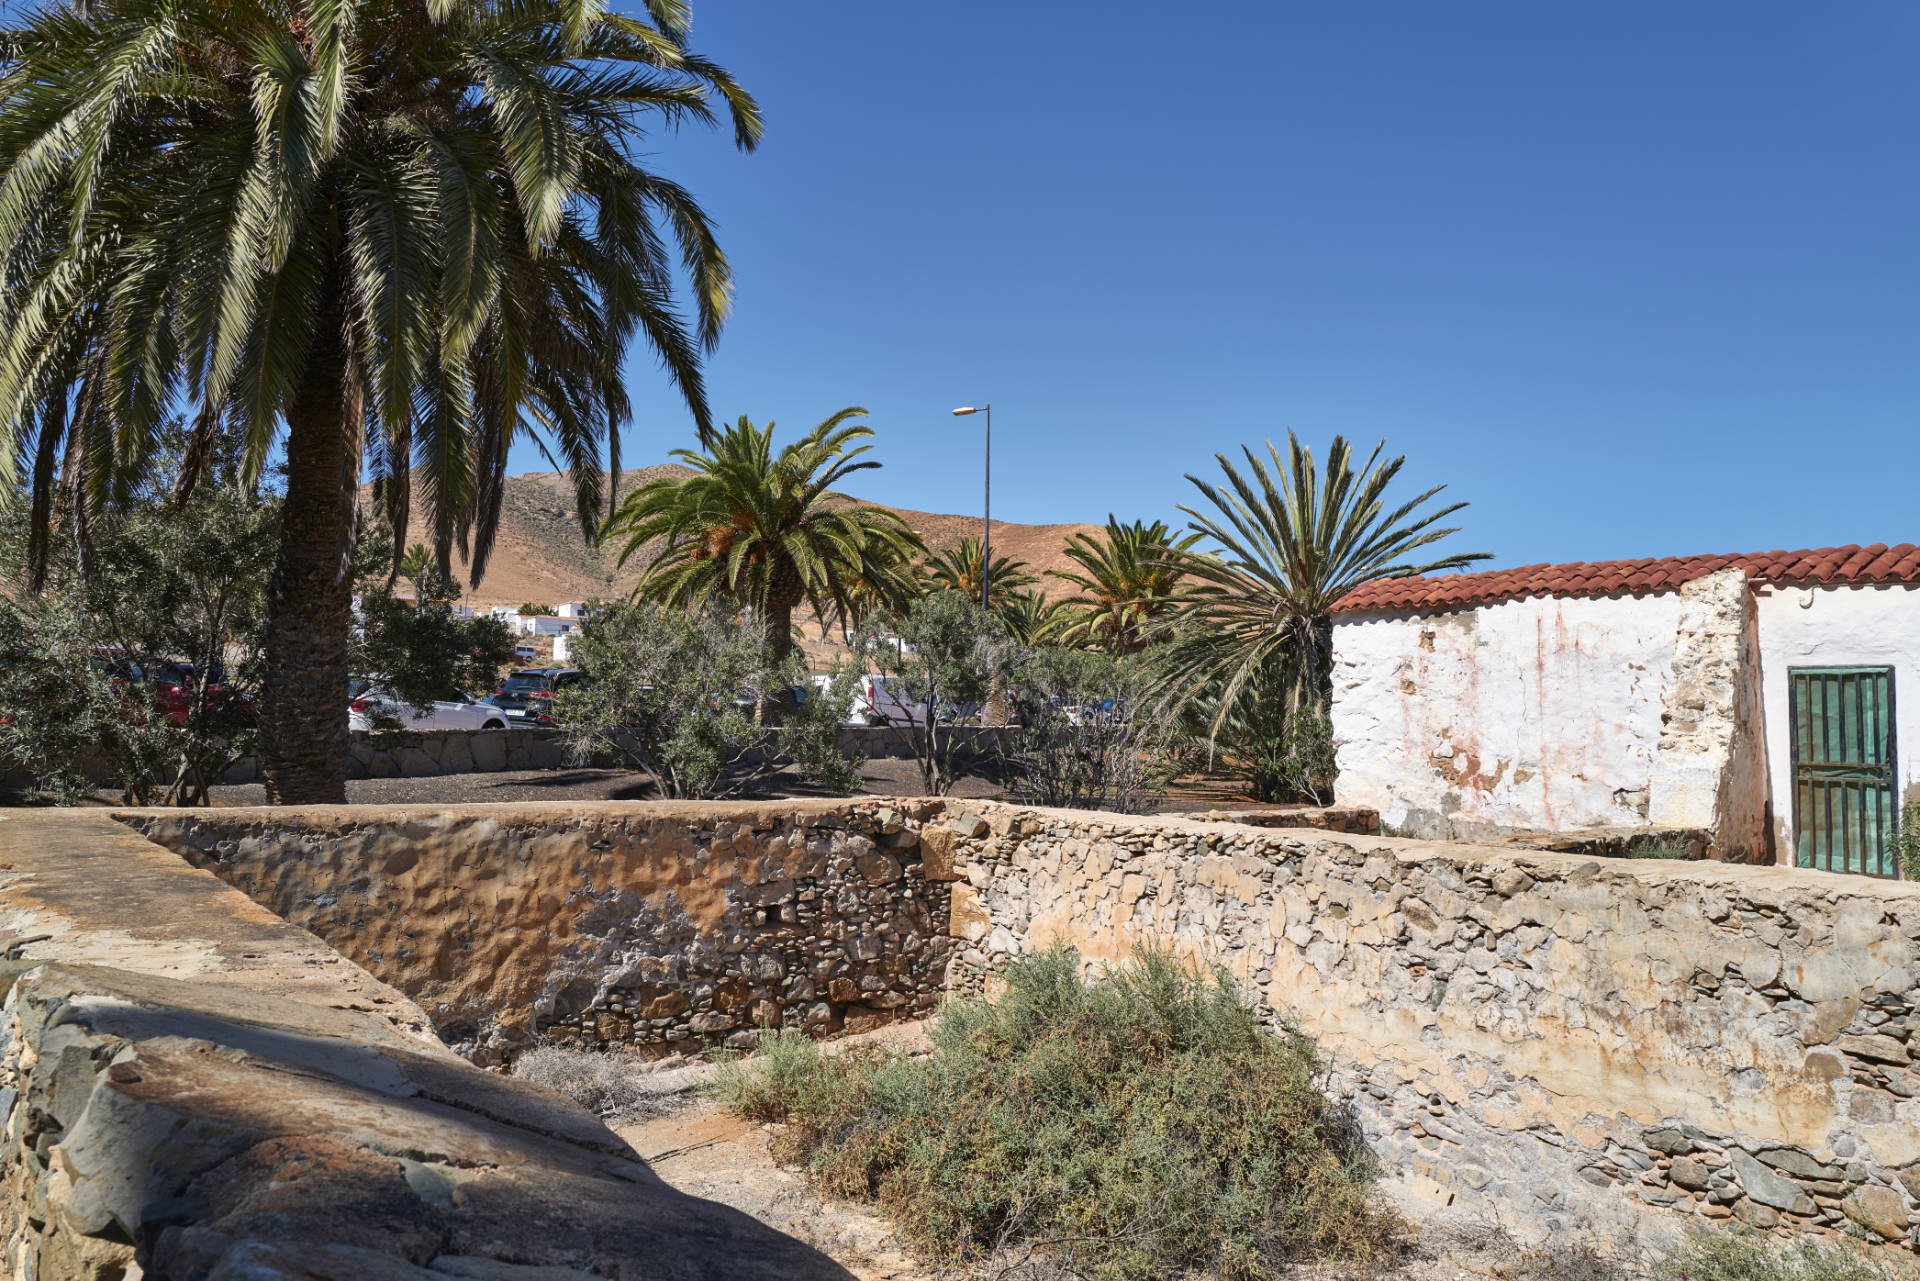 Der historischen Schöpfbrunnen im Barranco de Toto am Stadtrand von Pájara Fuerteventura.